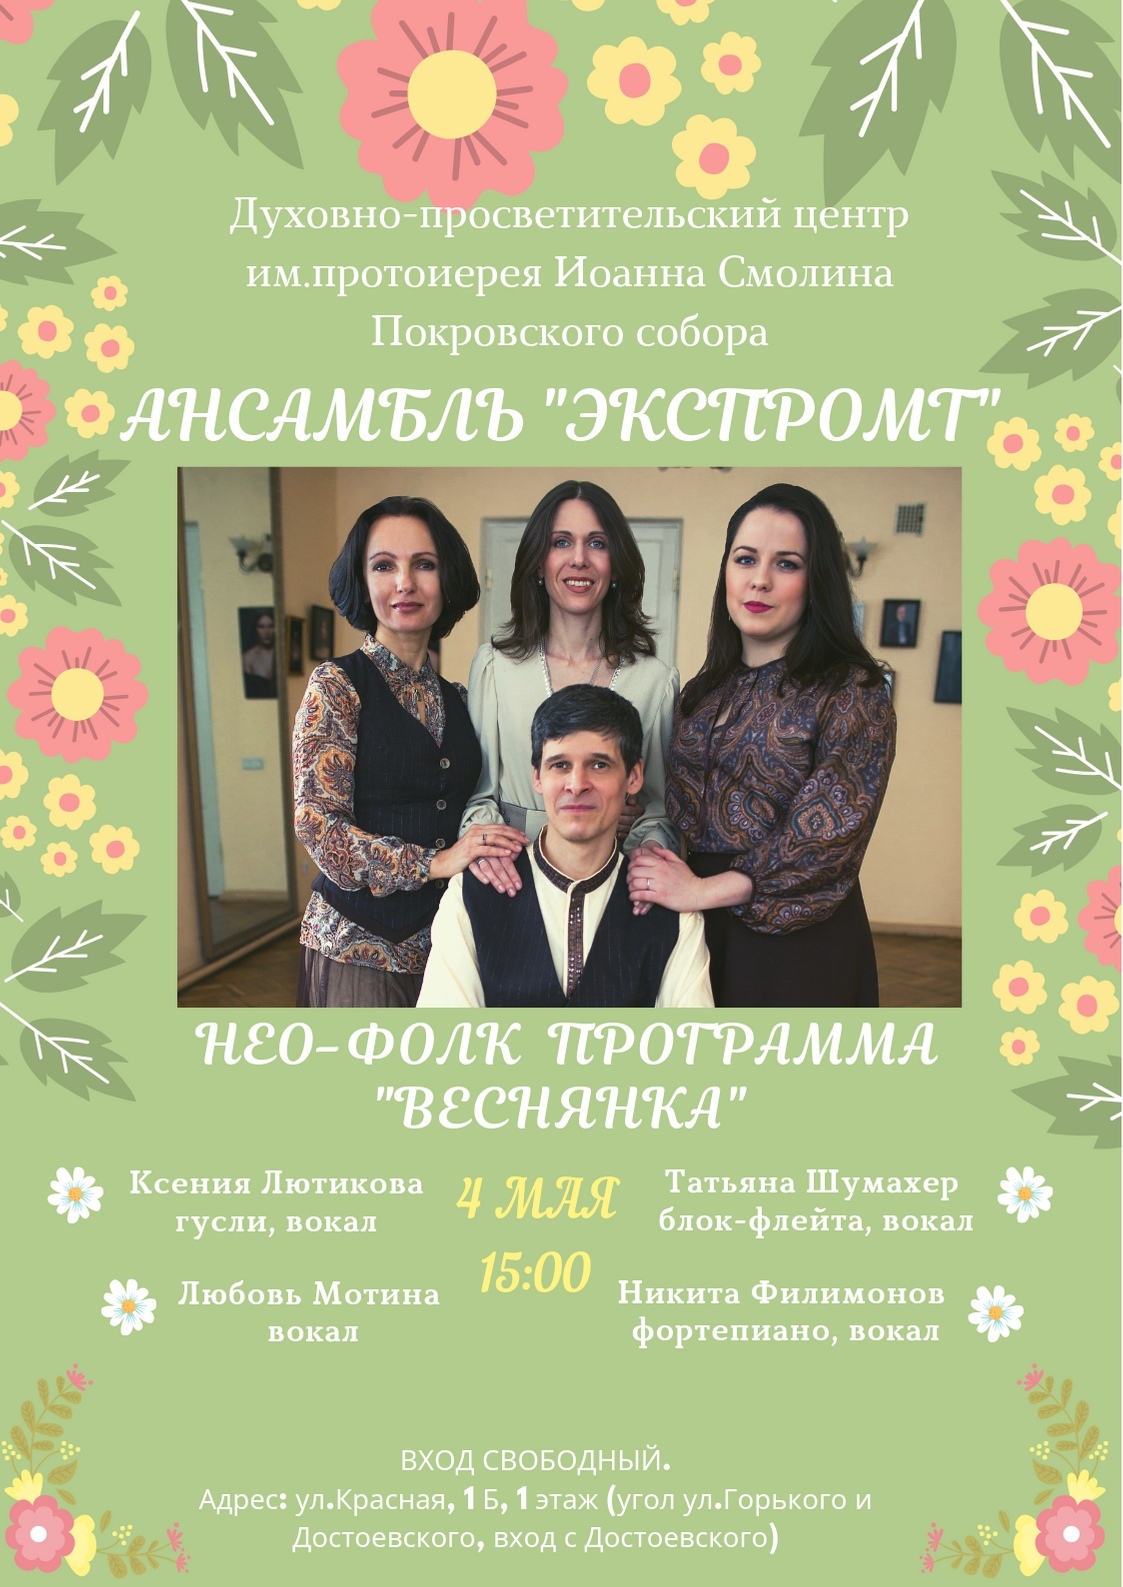 Приглашаем на концерт ансамбля "ЭКСПРОМТ"!